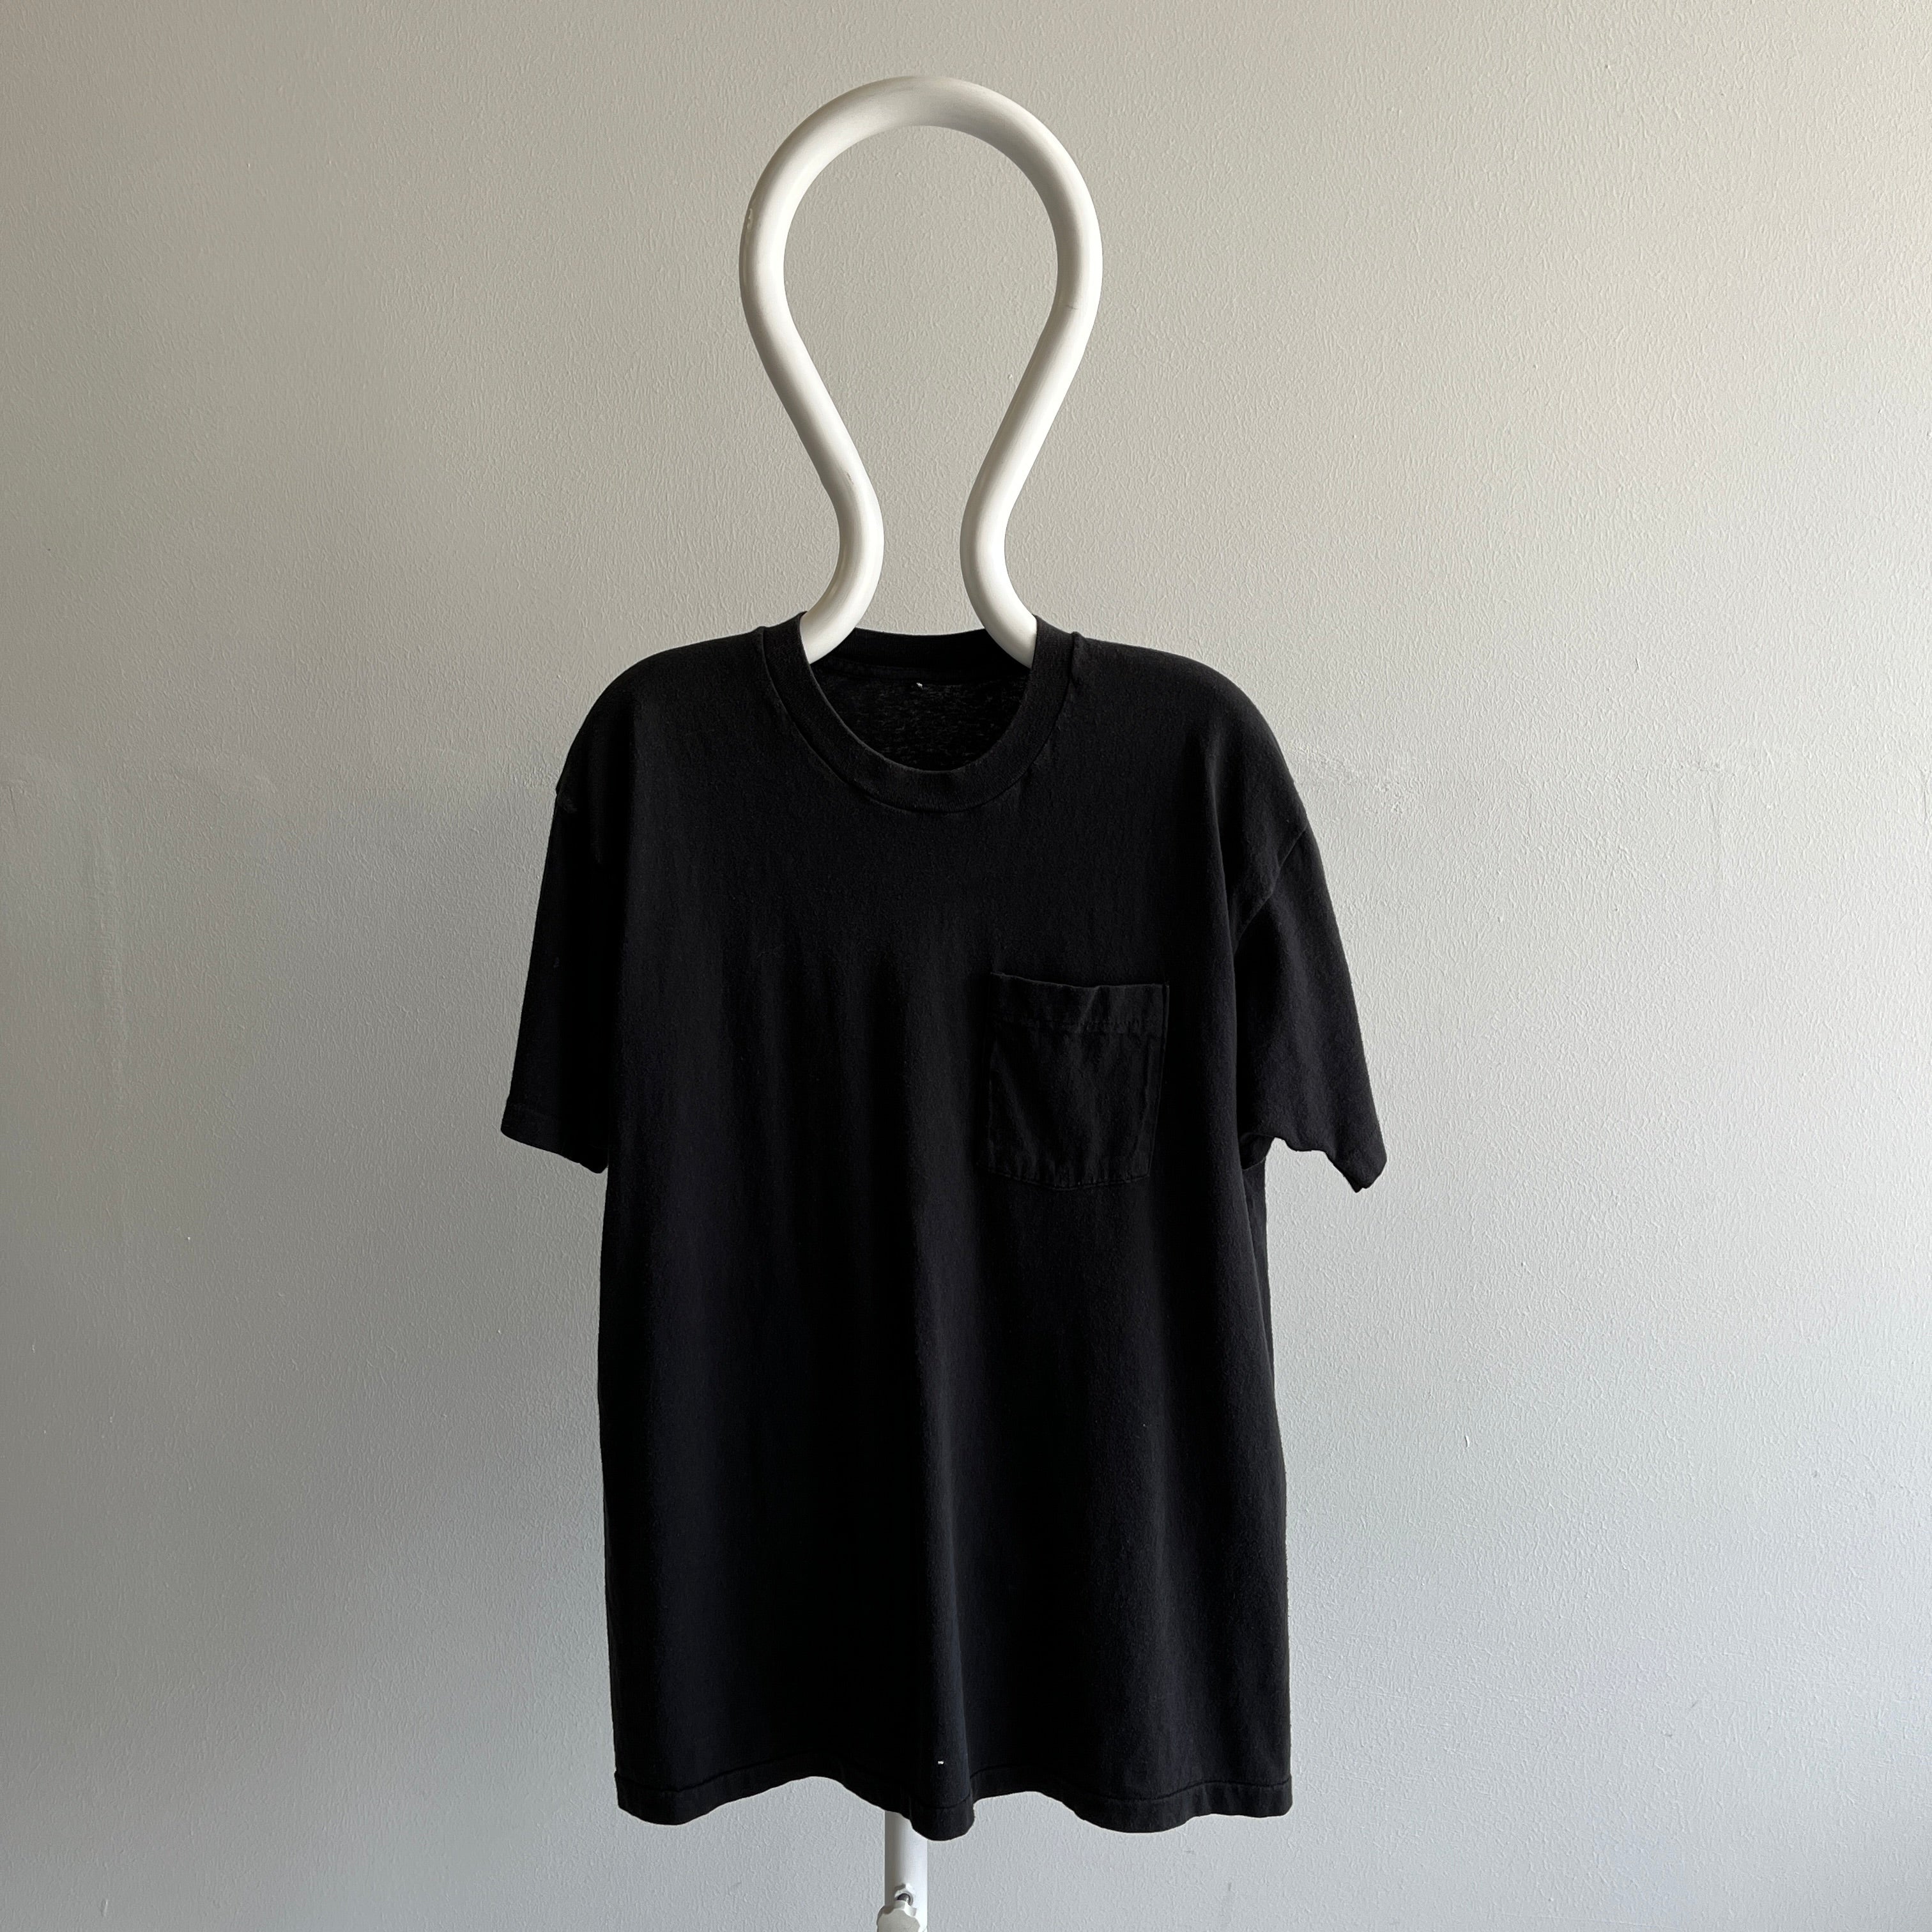 T-shirt de poche noir vierge des années 1980